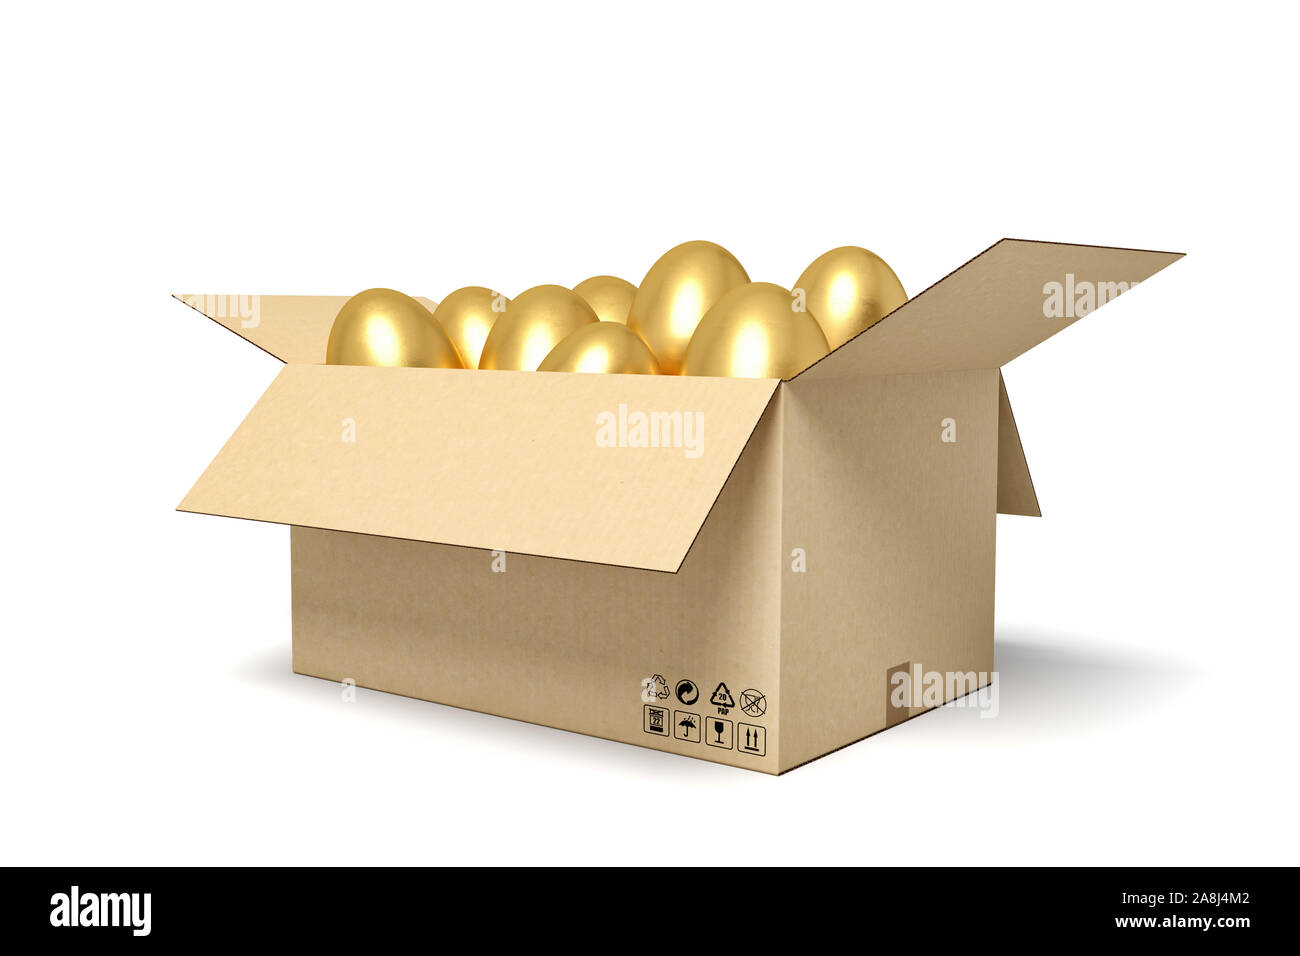 3d rendering of golden eggs in carton box. Stock Photo